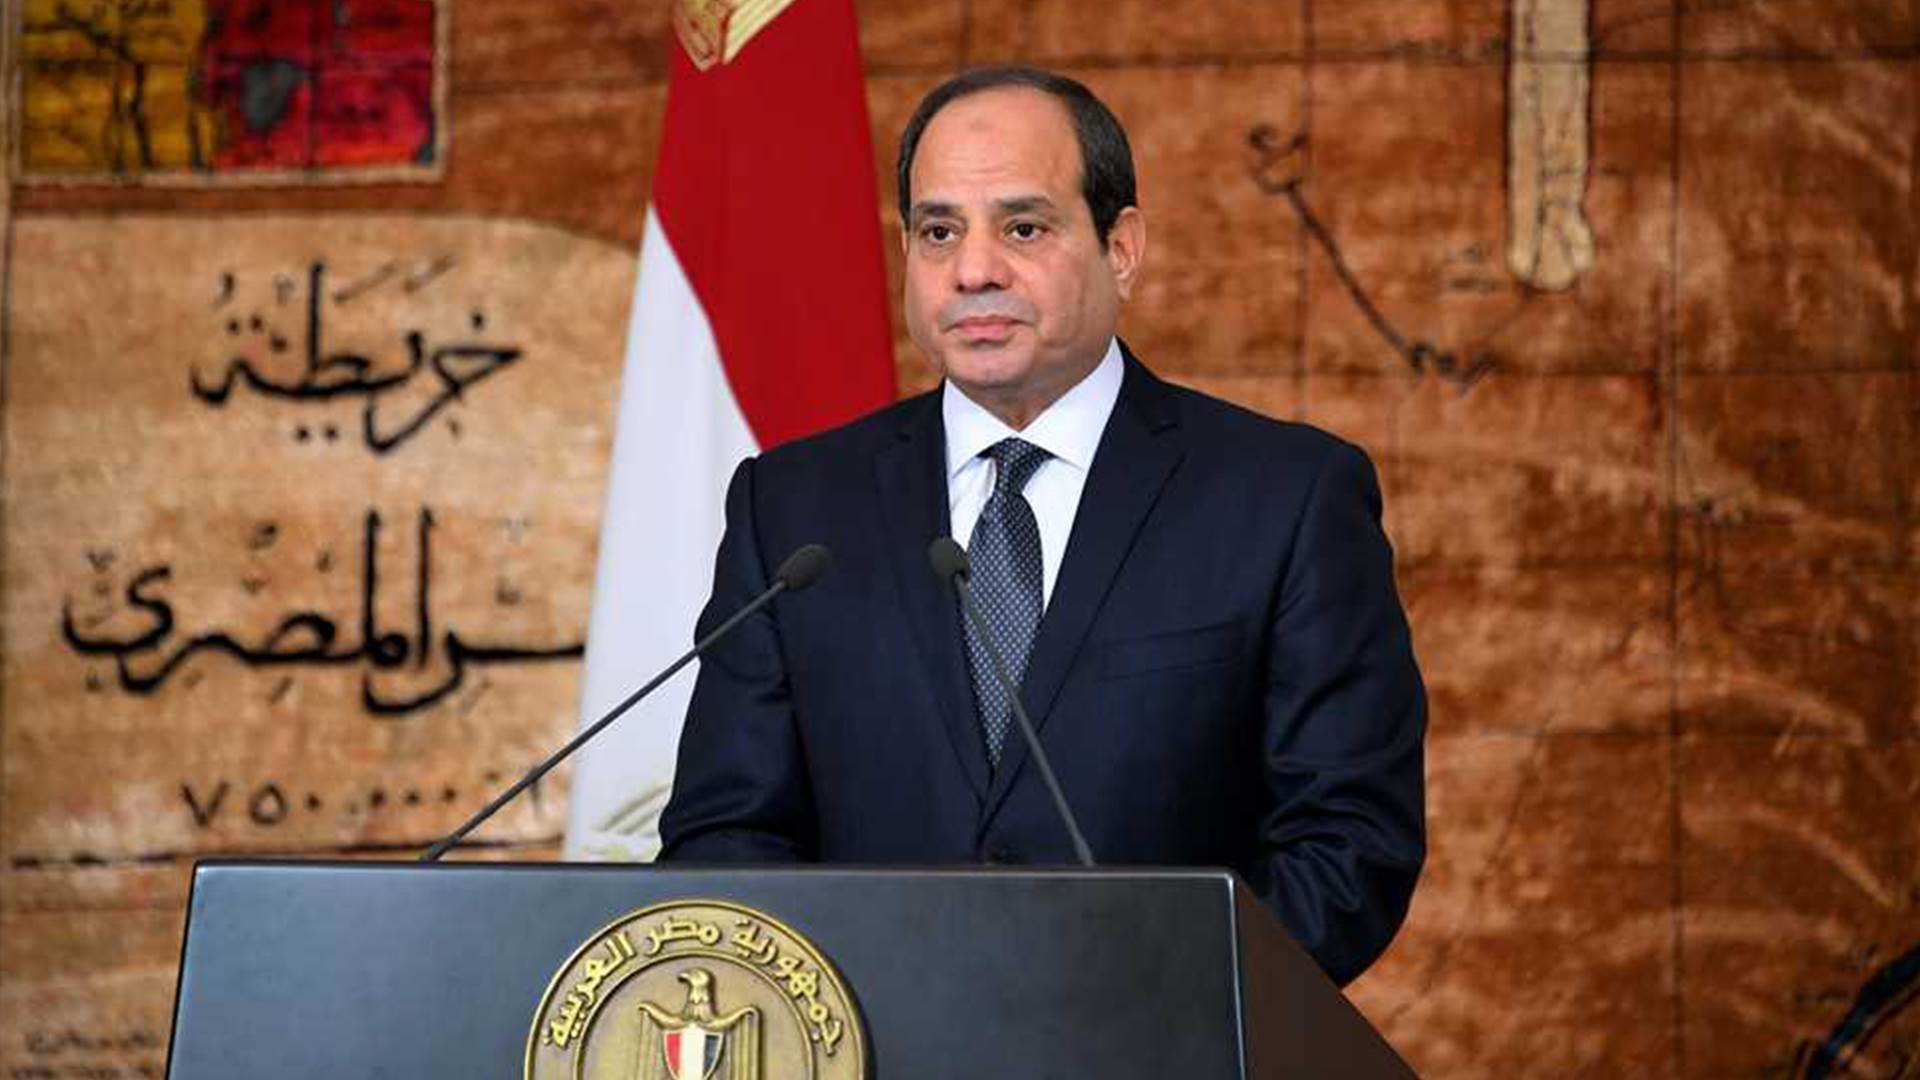 فوز الرئيس المصري عبد الفتاح السيسي في الانتخابات للمرة الثالثة